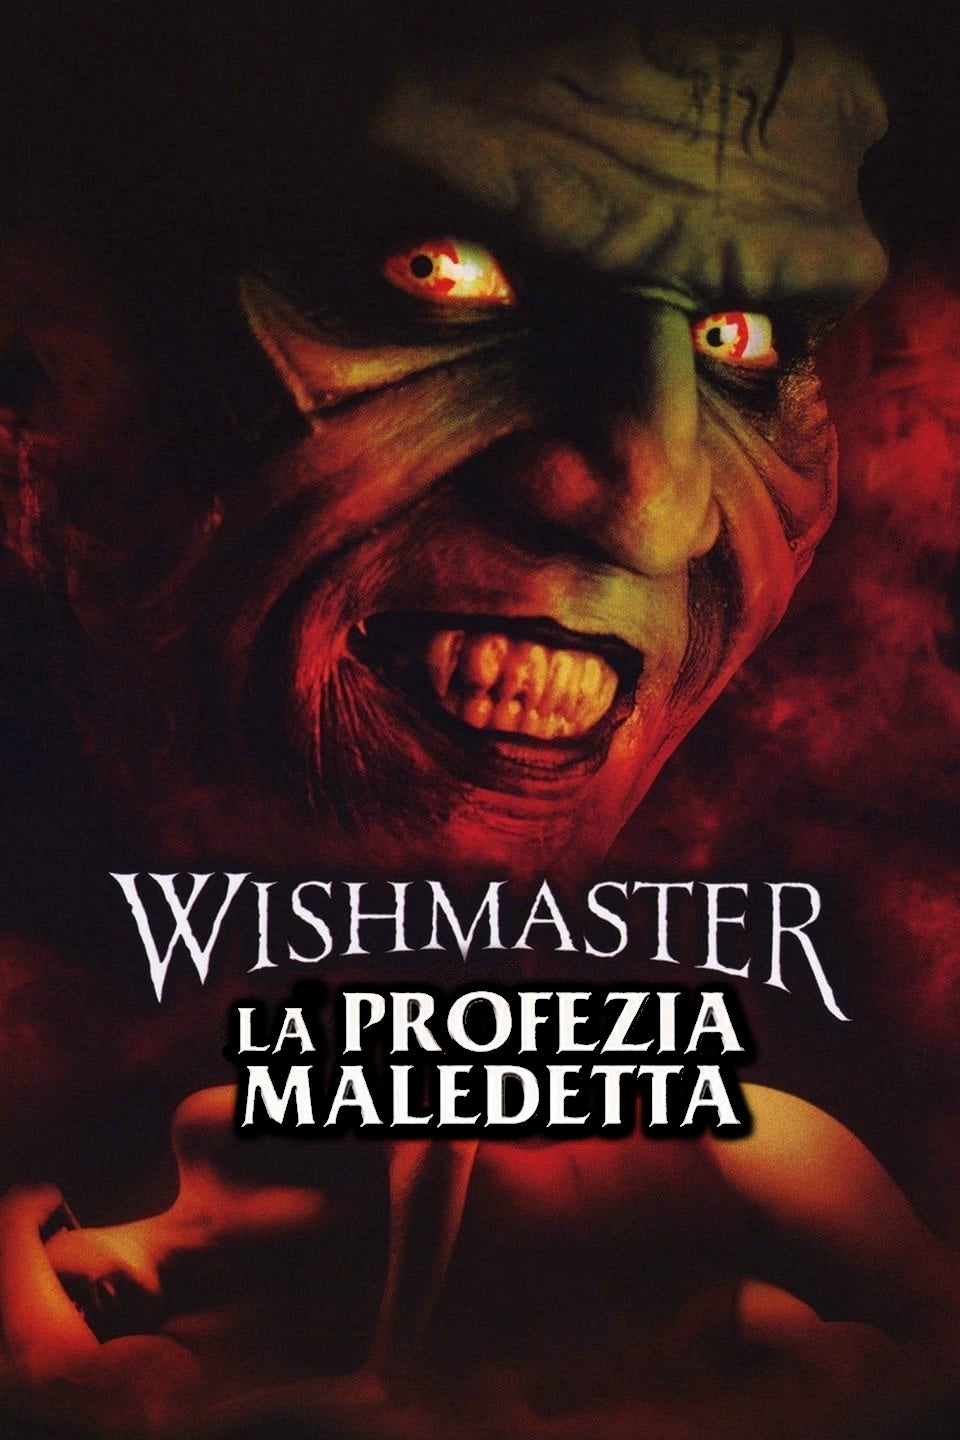 Wishmaster 4 – La profezia maledetta (2002)